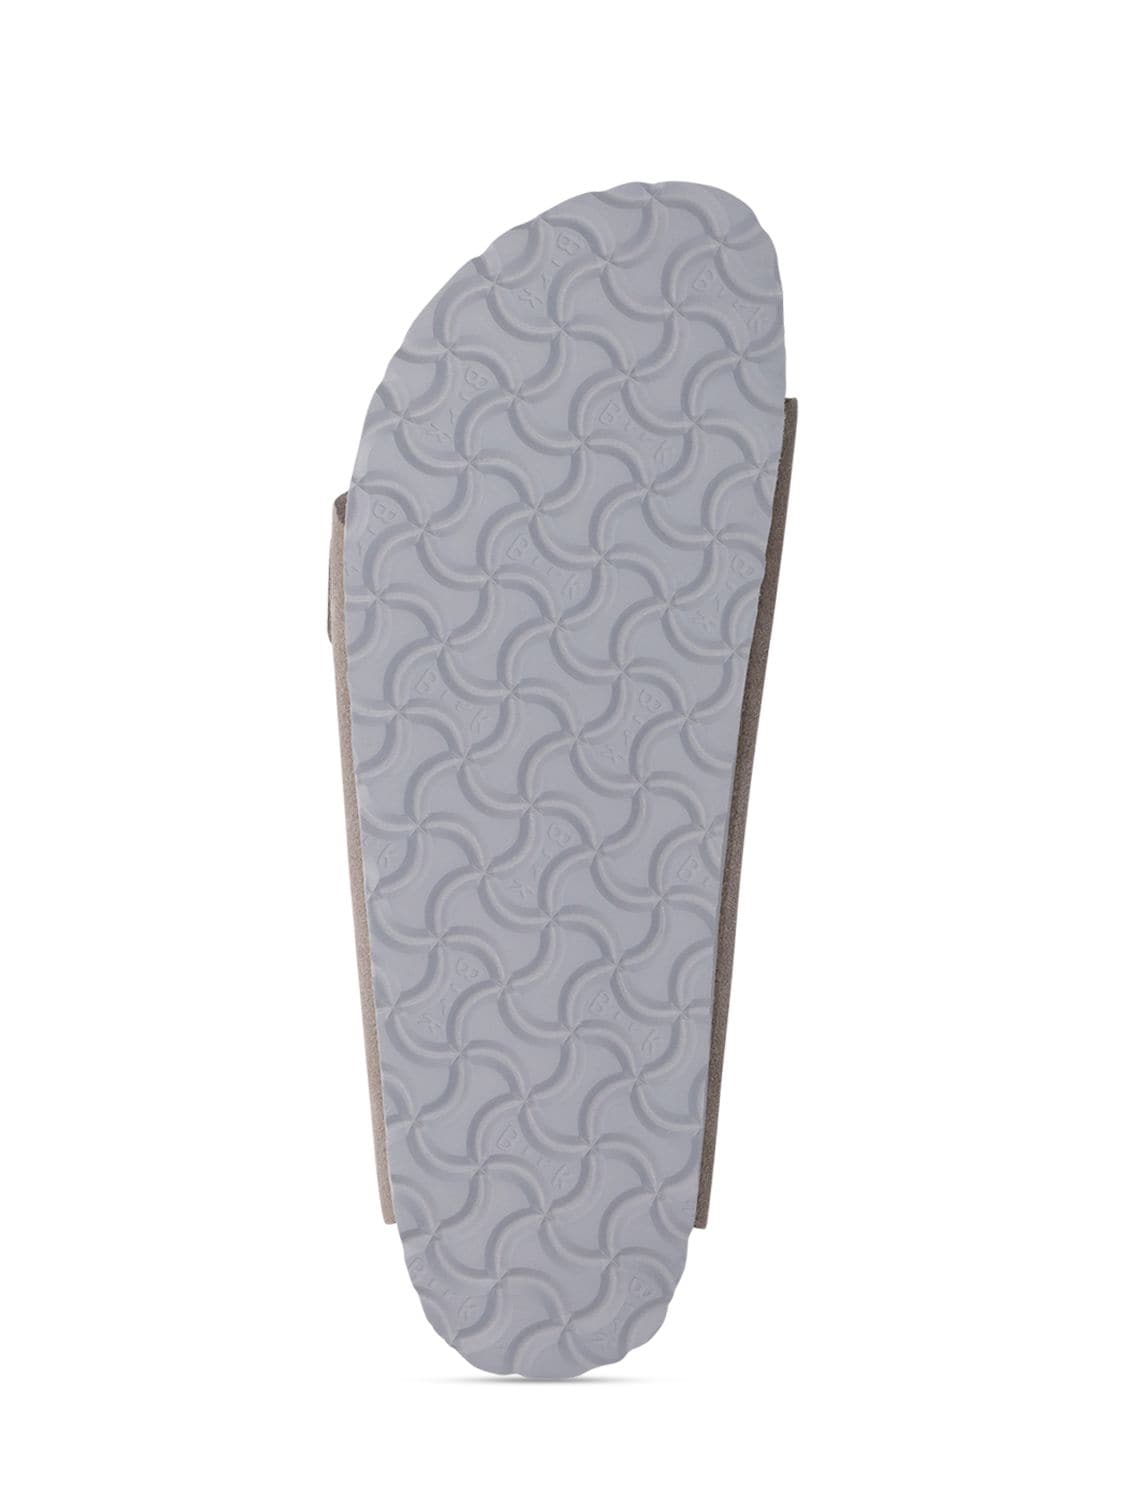 Shop Birkenstock Arizona Suede Sandals In Grey